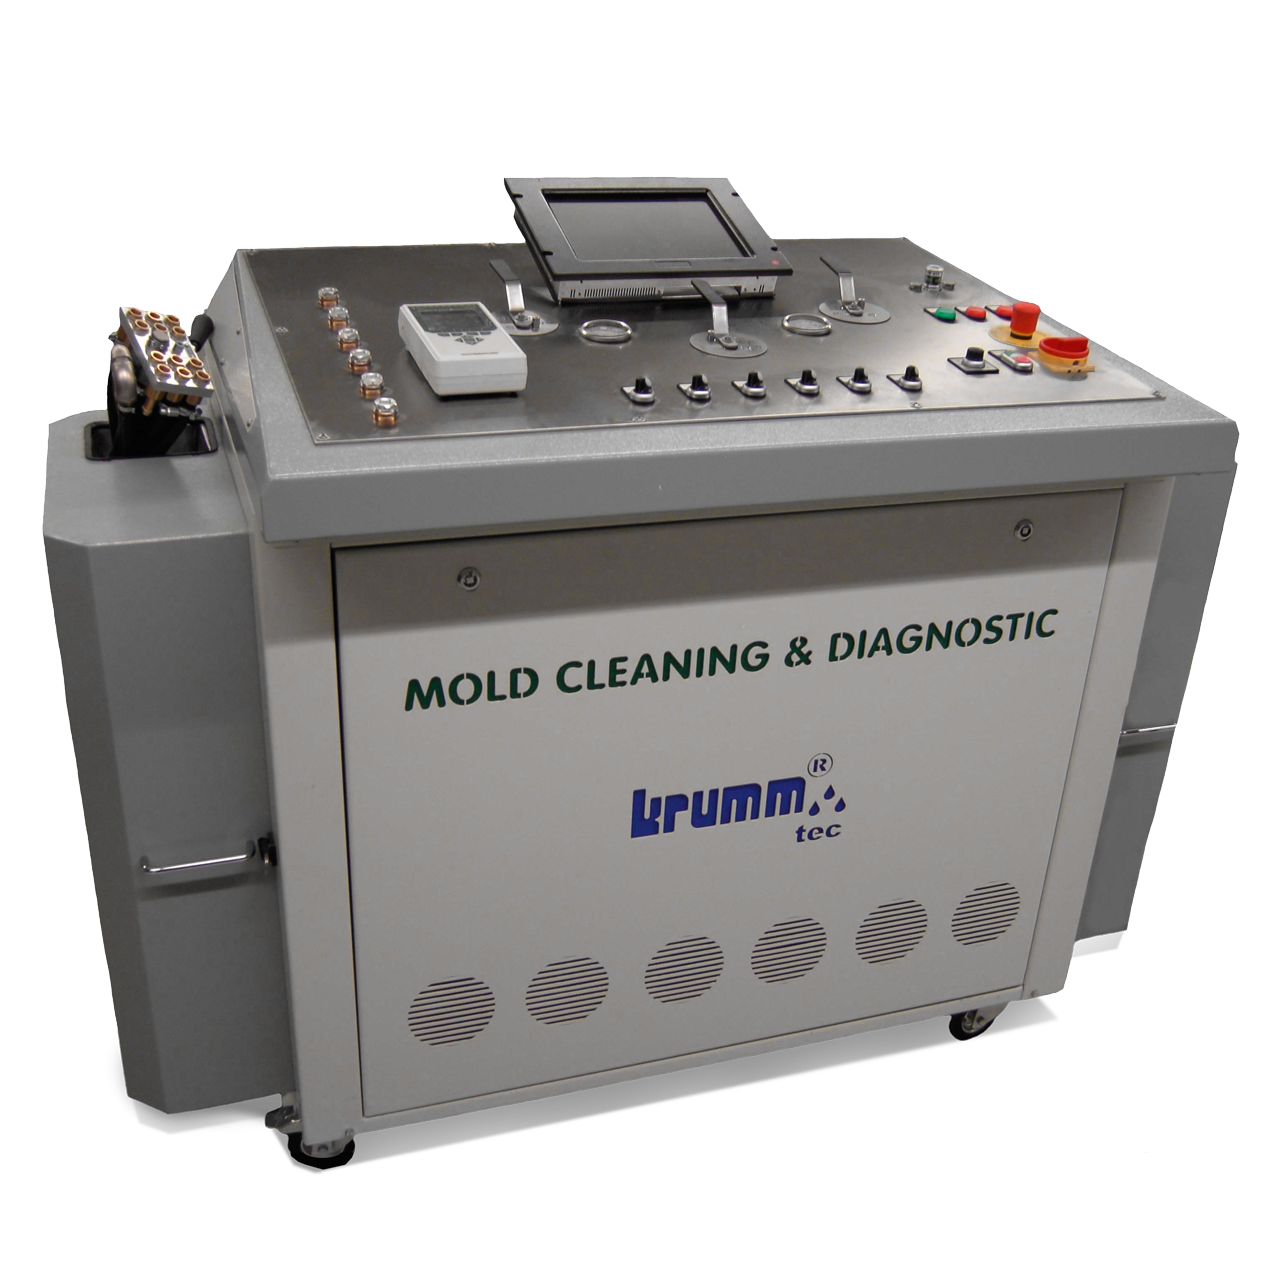 Mold cleaning diagnostic Krumm-tec